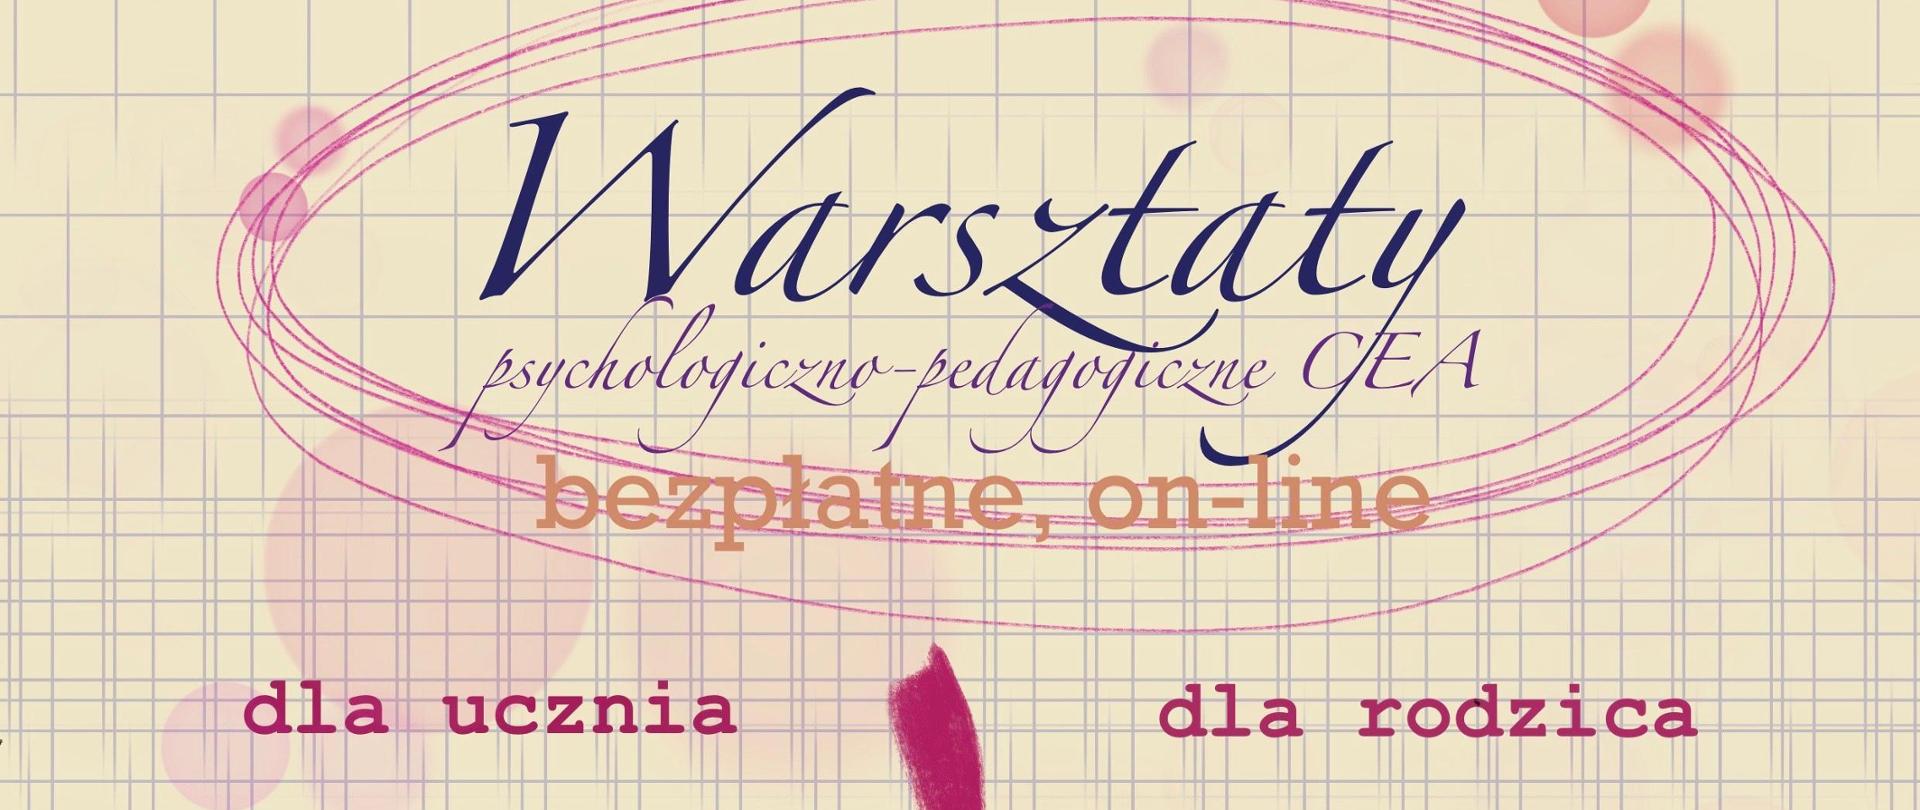 Grafika tekstowa reklamująca Warsztaty ich tematy.